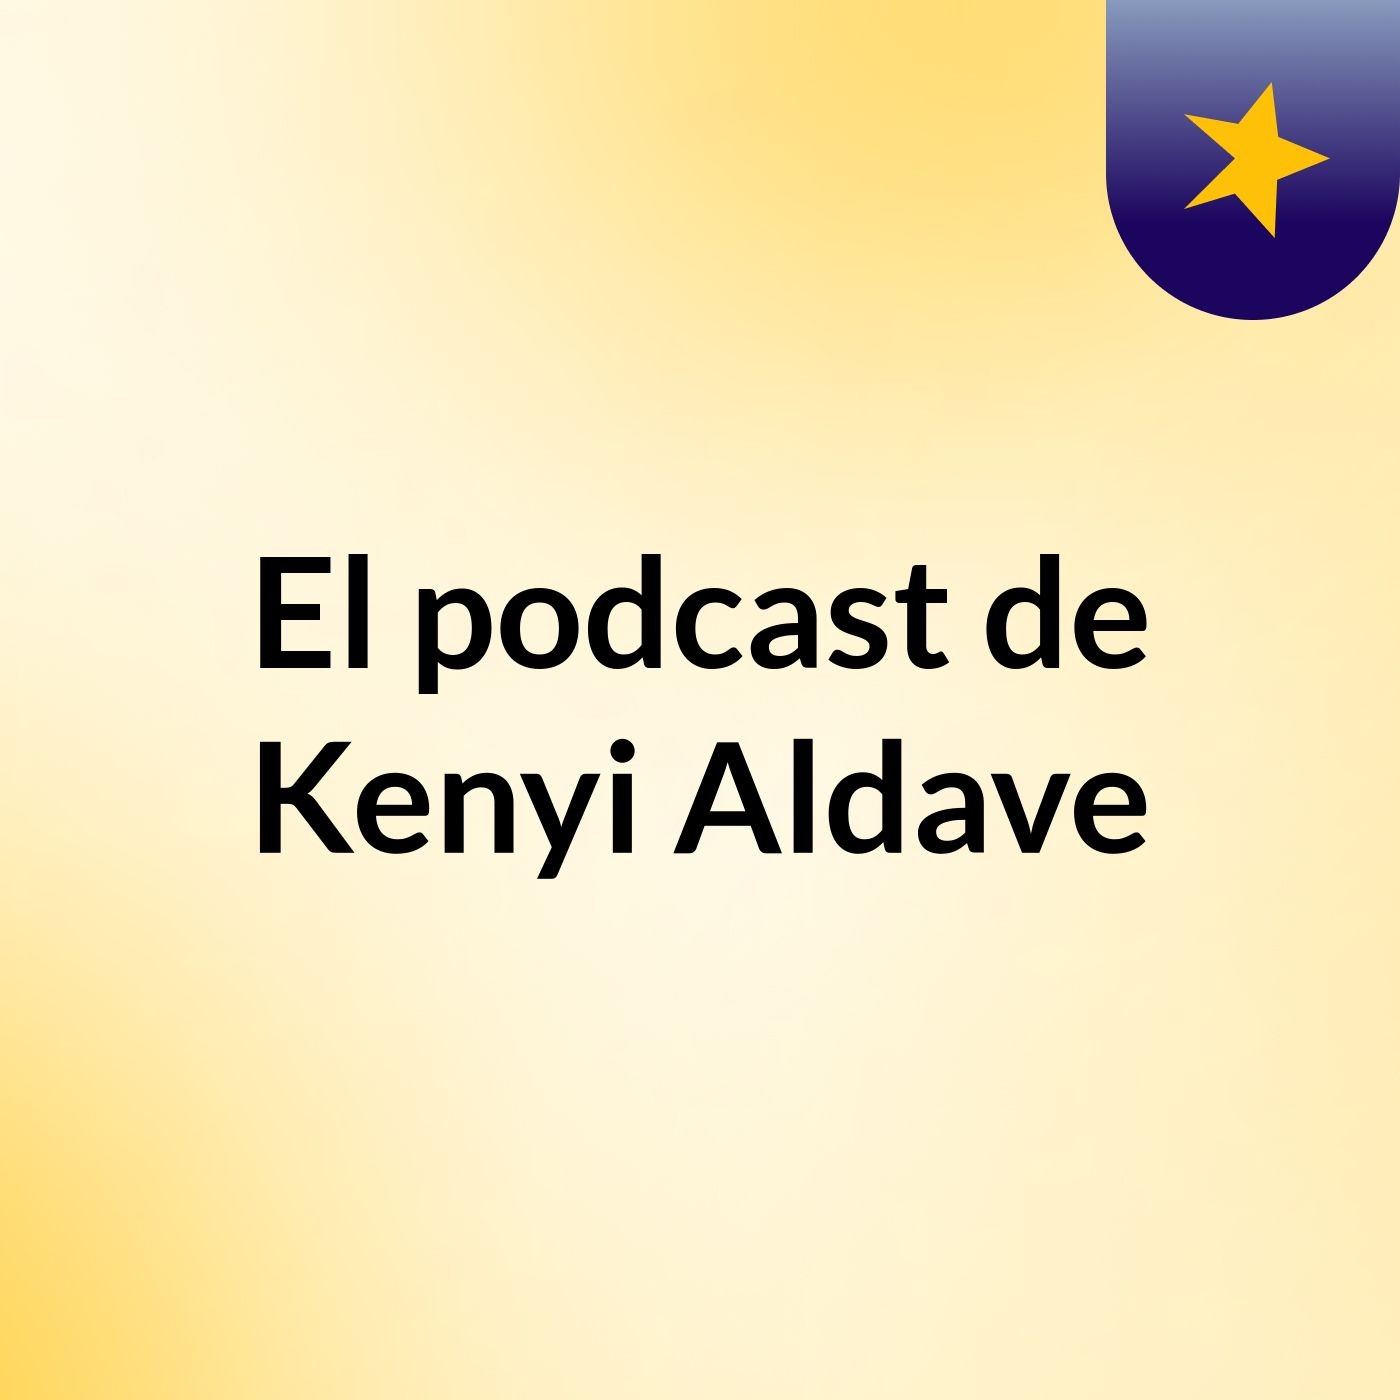 El podcast de Kenyi Aldave